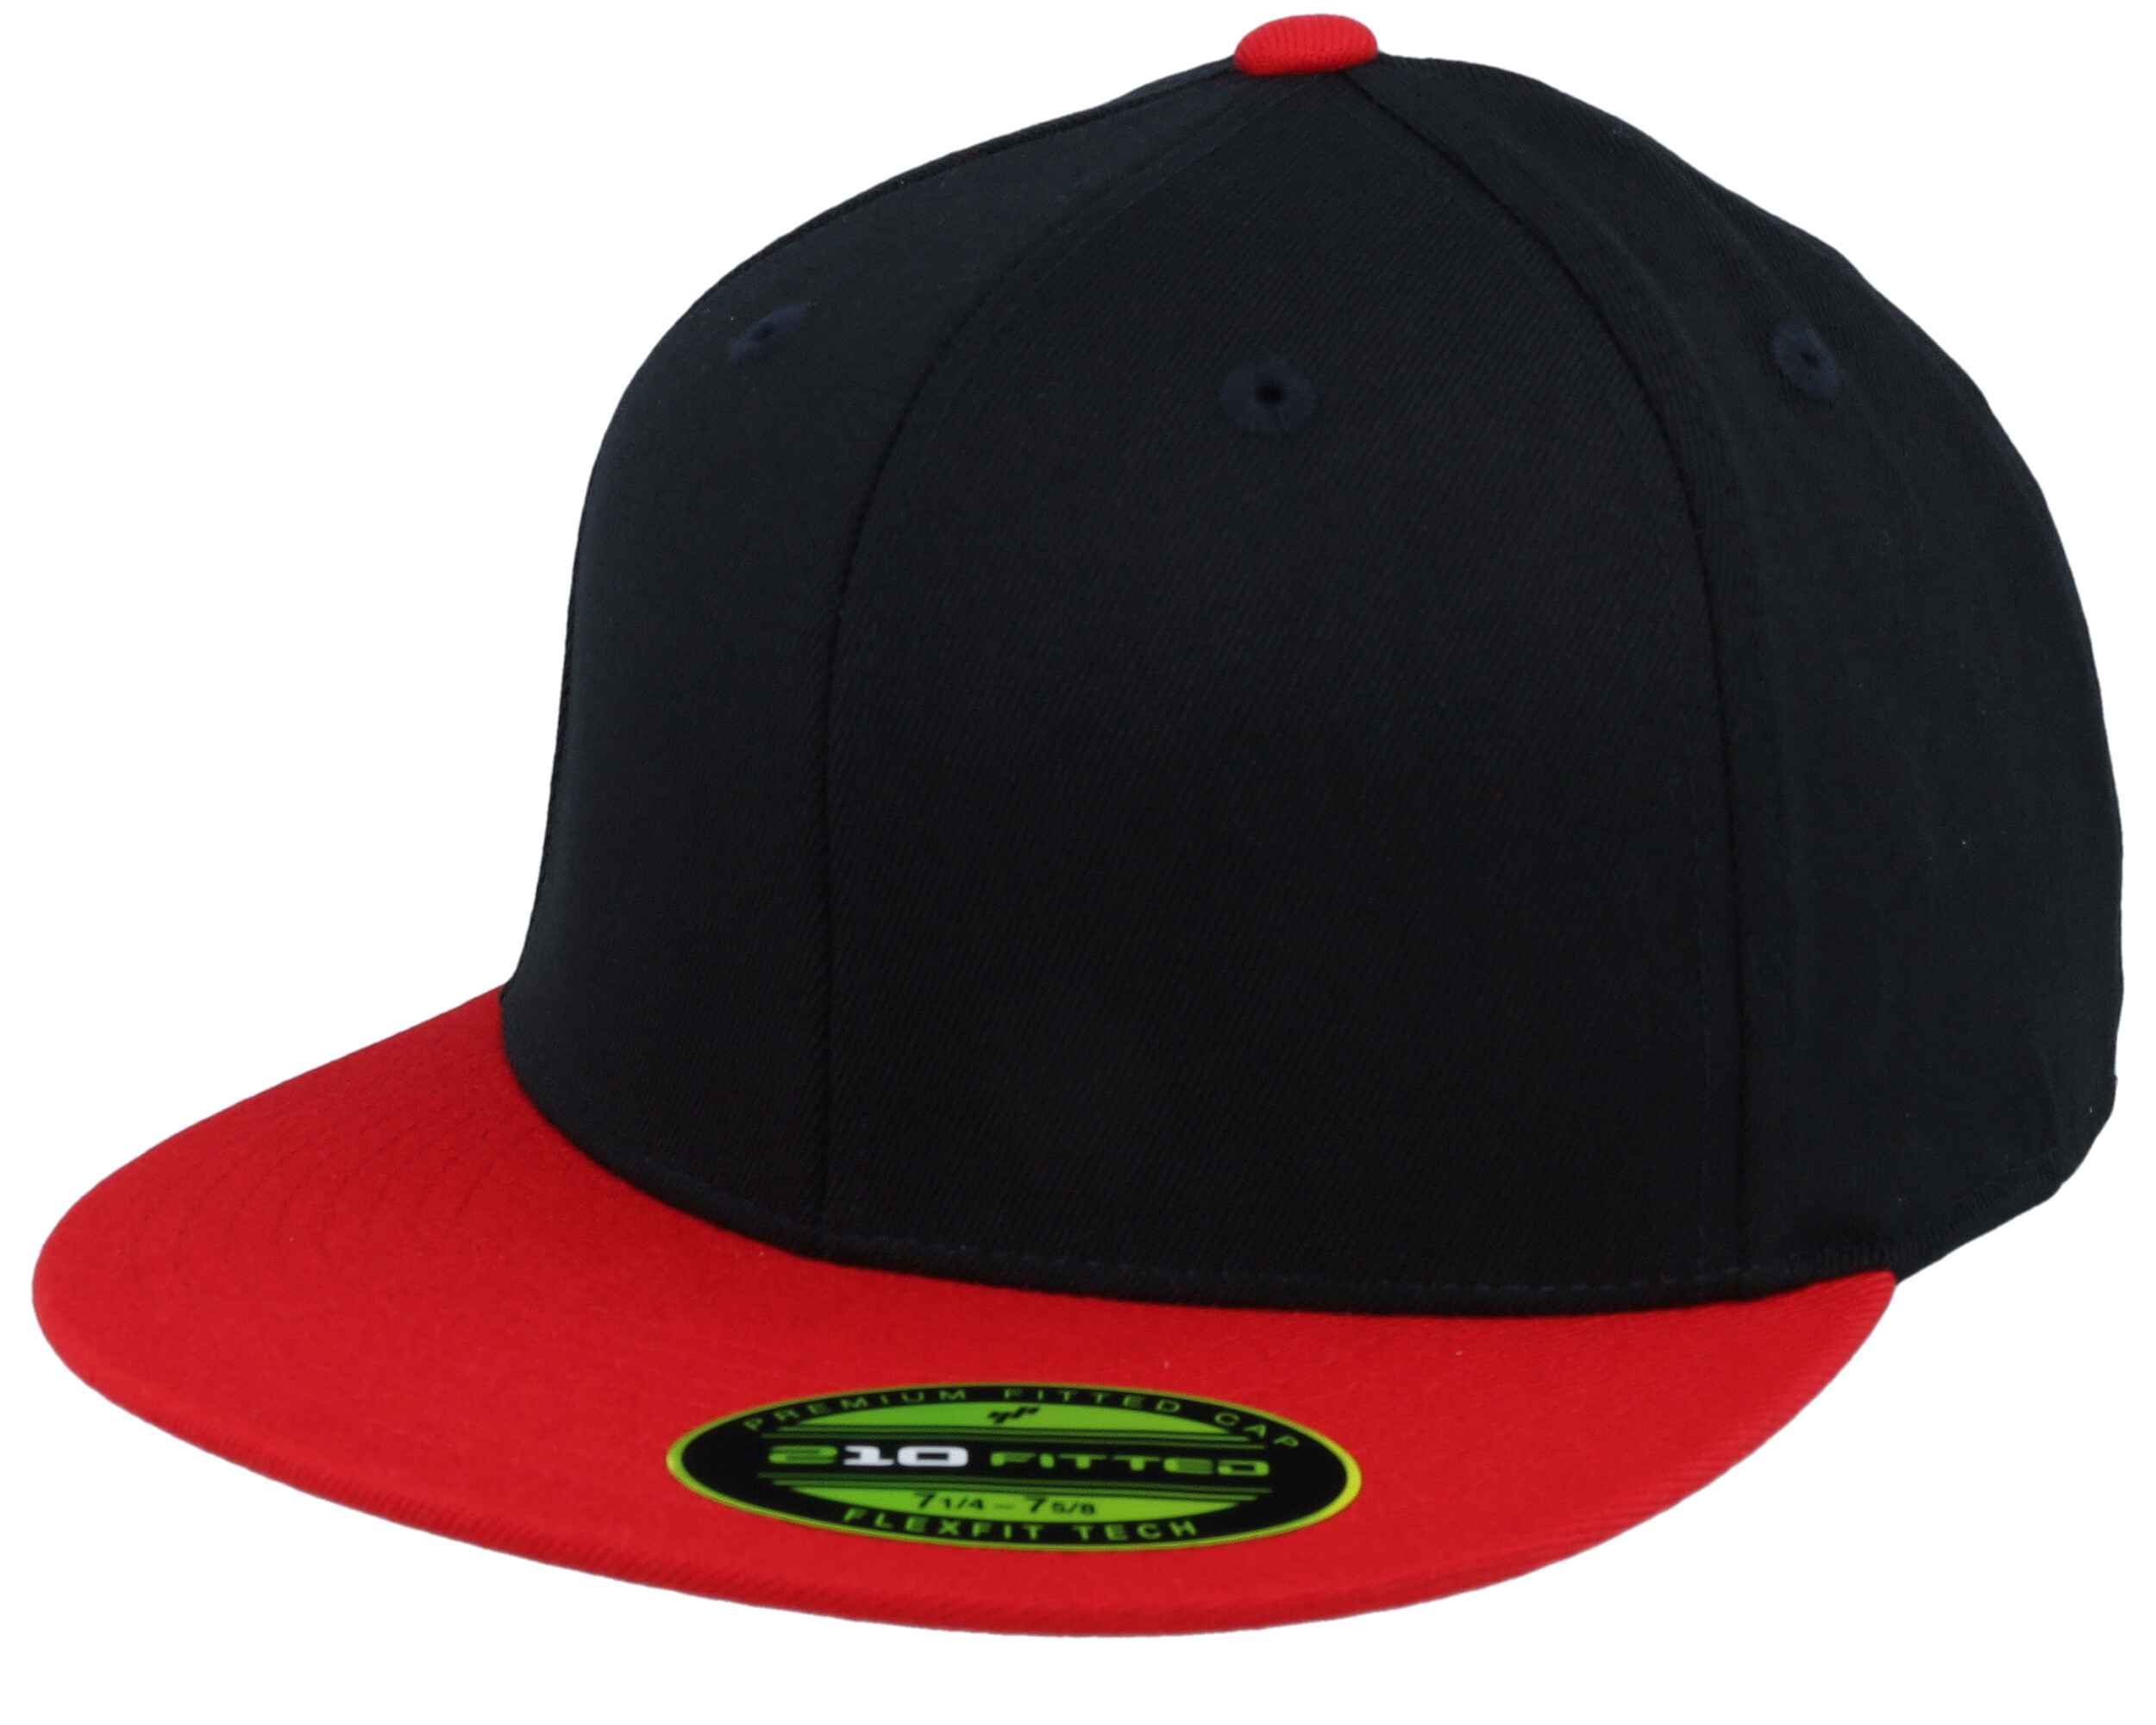 - Premium Fitted 210 Black/Red 2-Tone Flexfit cap